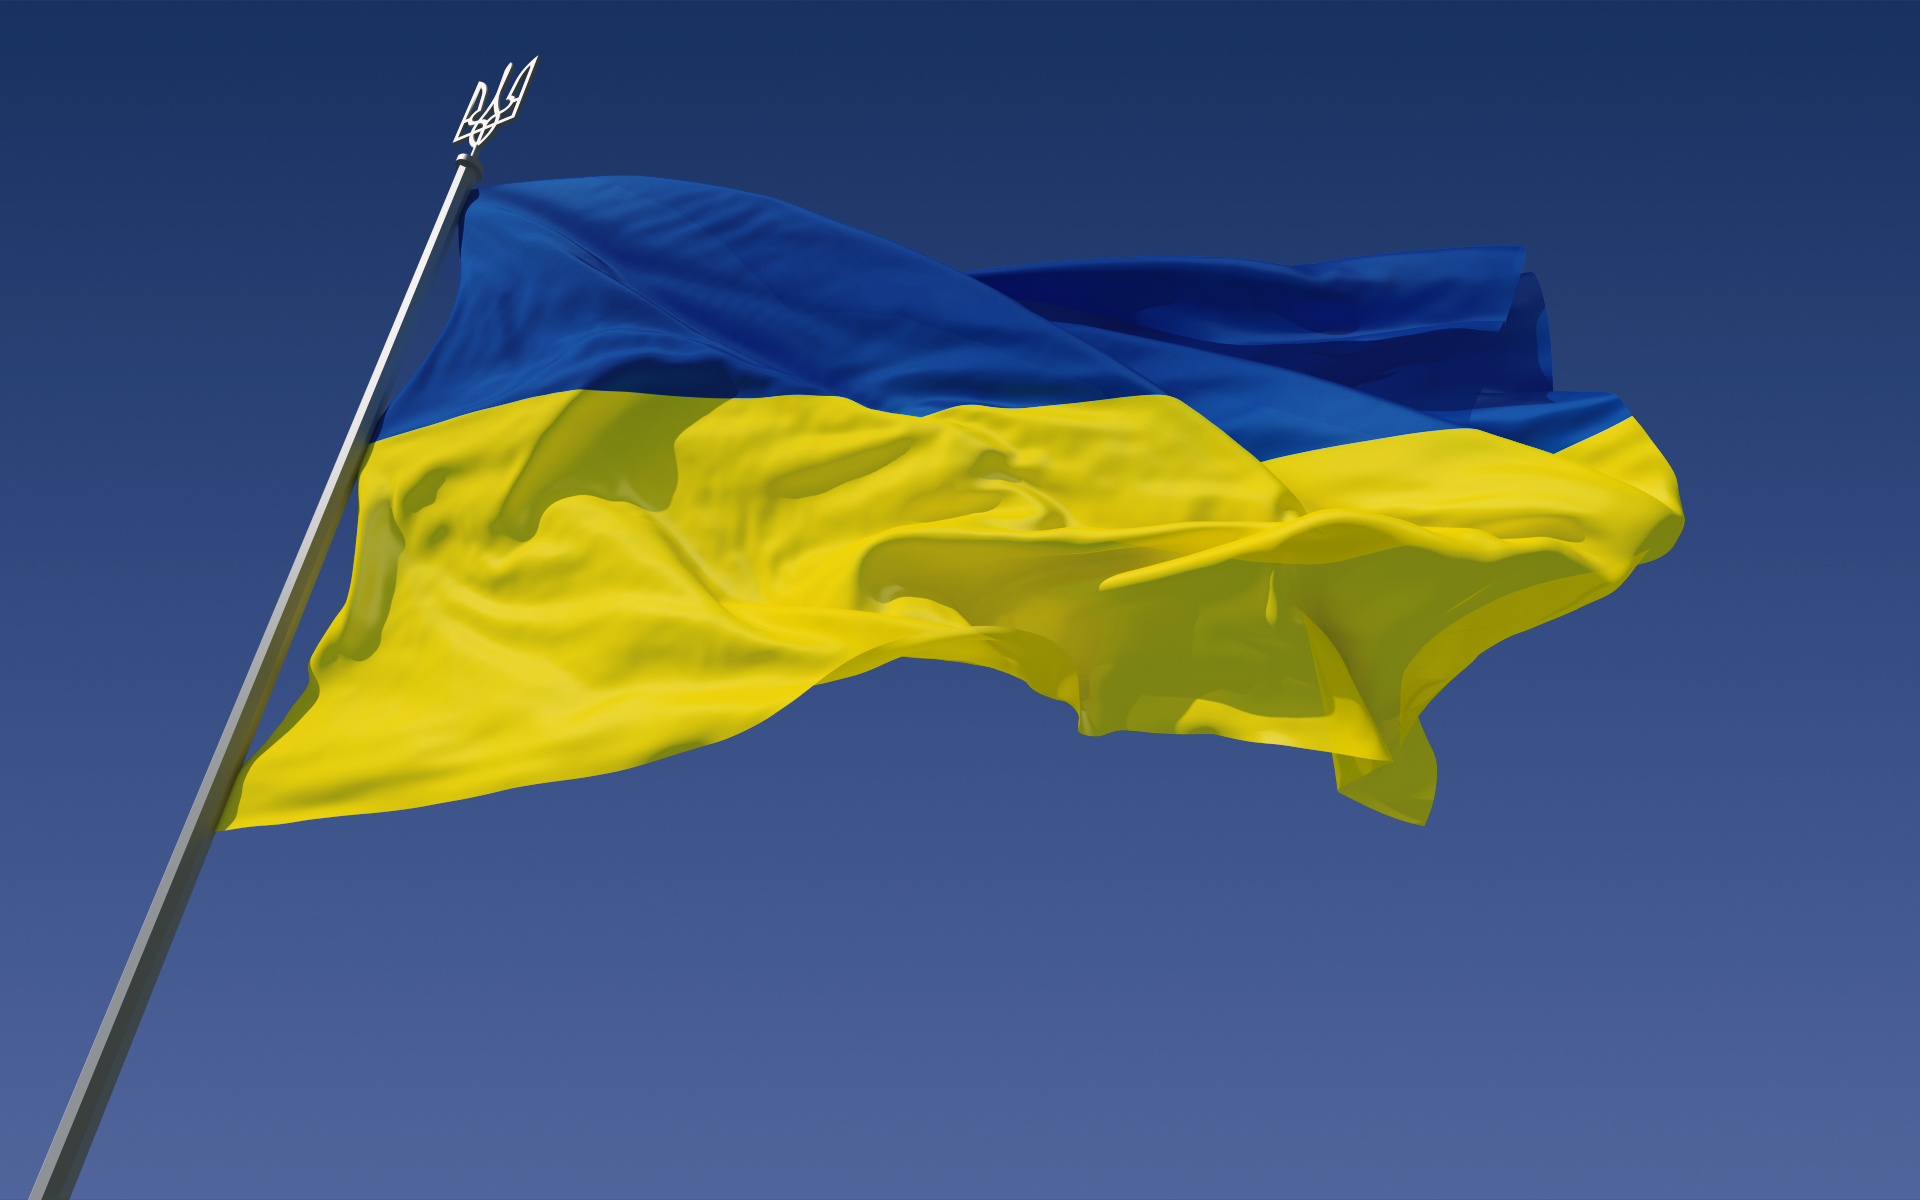 populacja ukrainy koliszczyzny